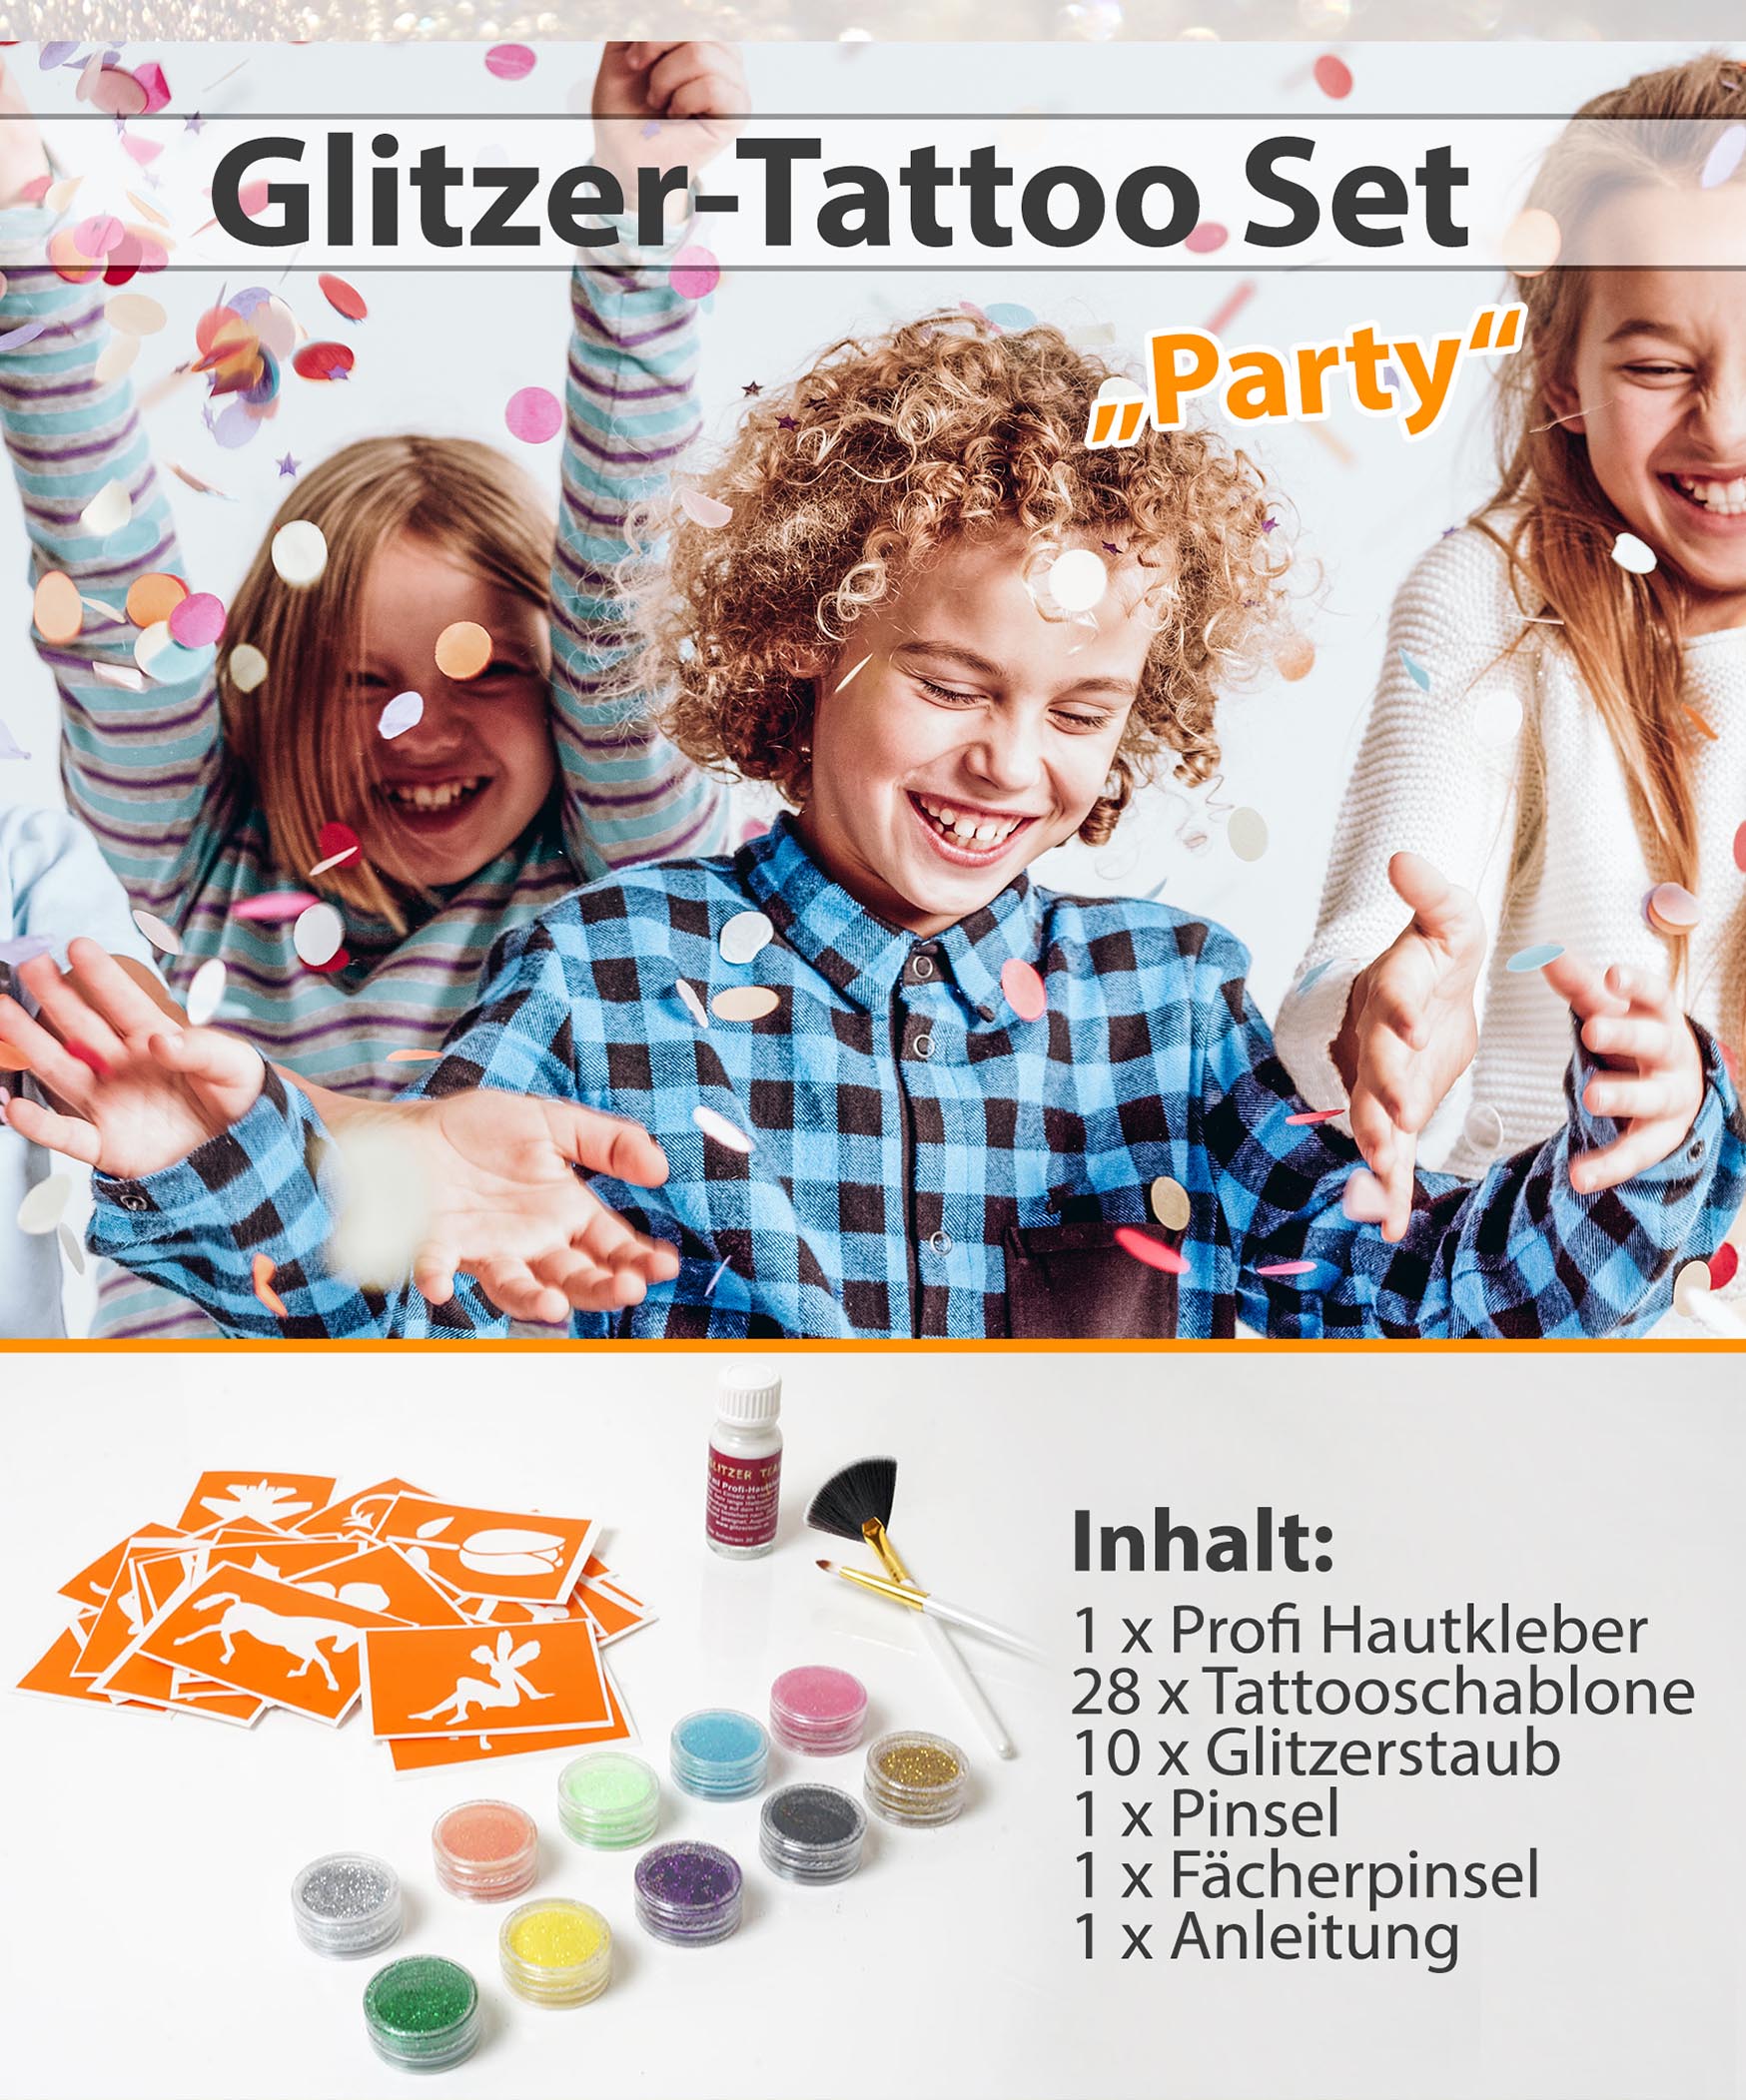 Glitzer Tattoo SET PARTY mit Profikleber, 2x Pinsel, 10x Glitzer, 28x Tattooschablone